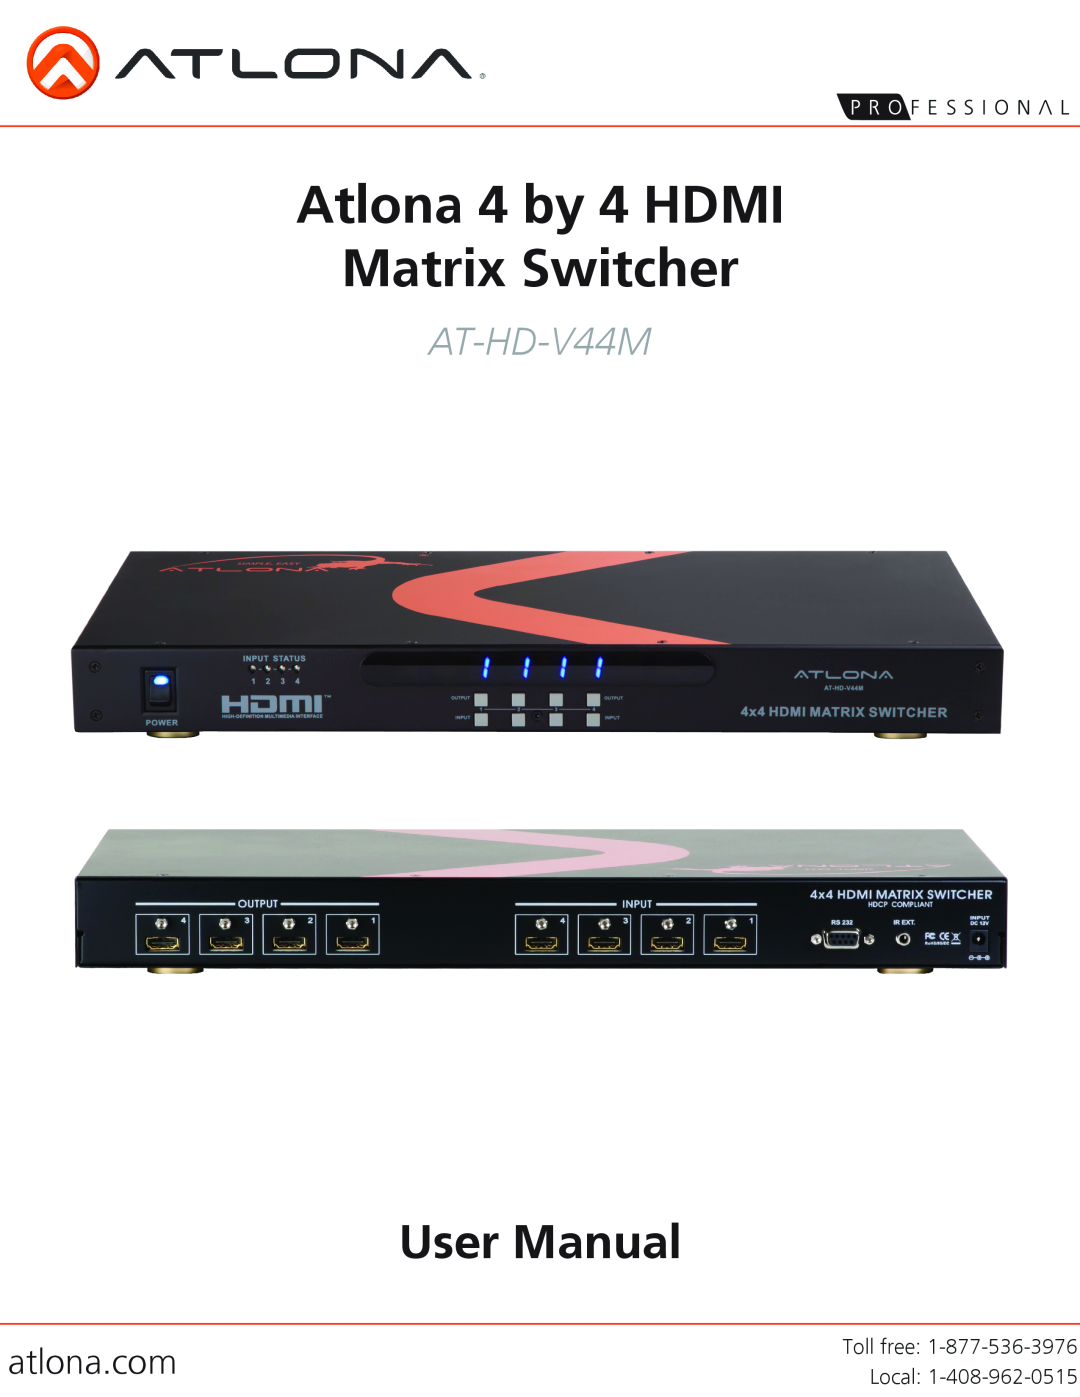 Atlona AT-HD-V44M user manual atlona.com, Atlona 4 by 4 HDMI Matrix Switcher 